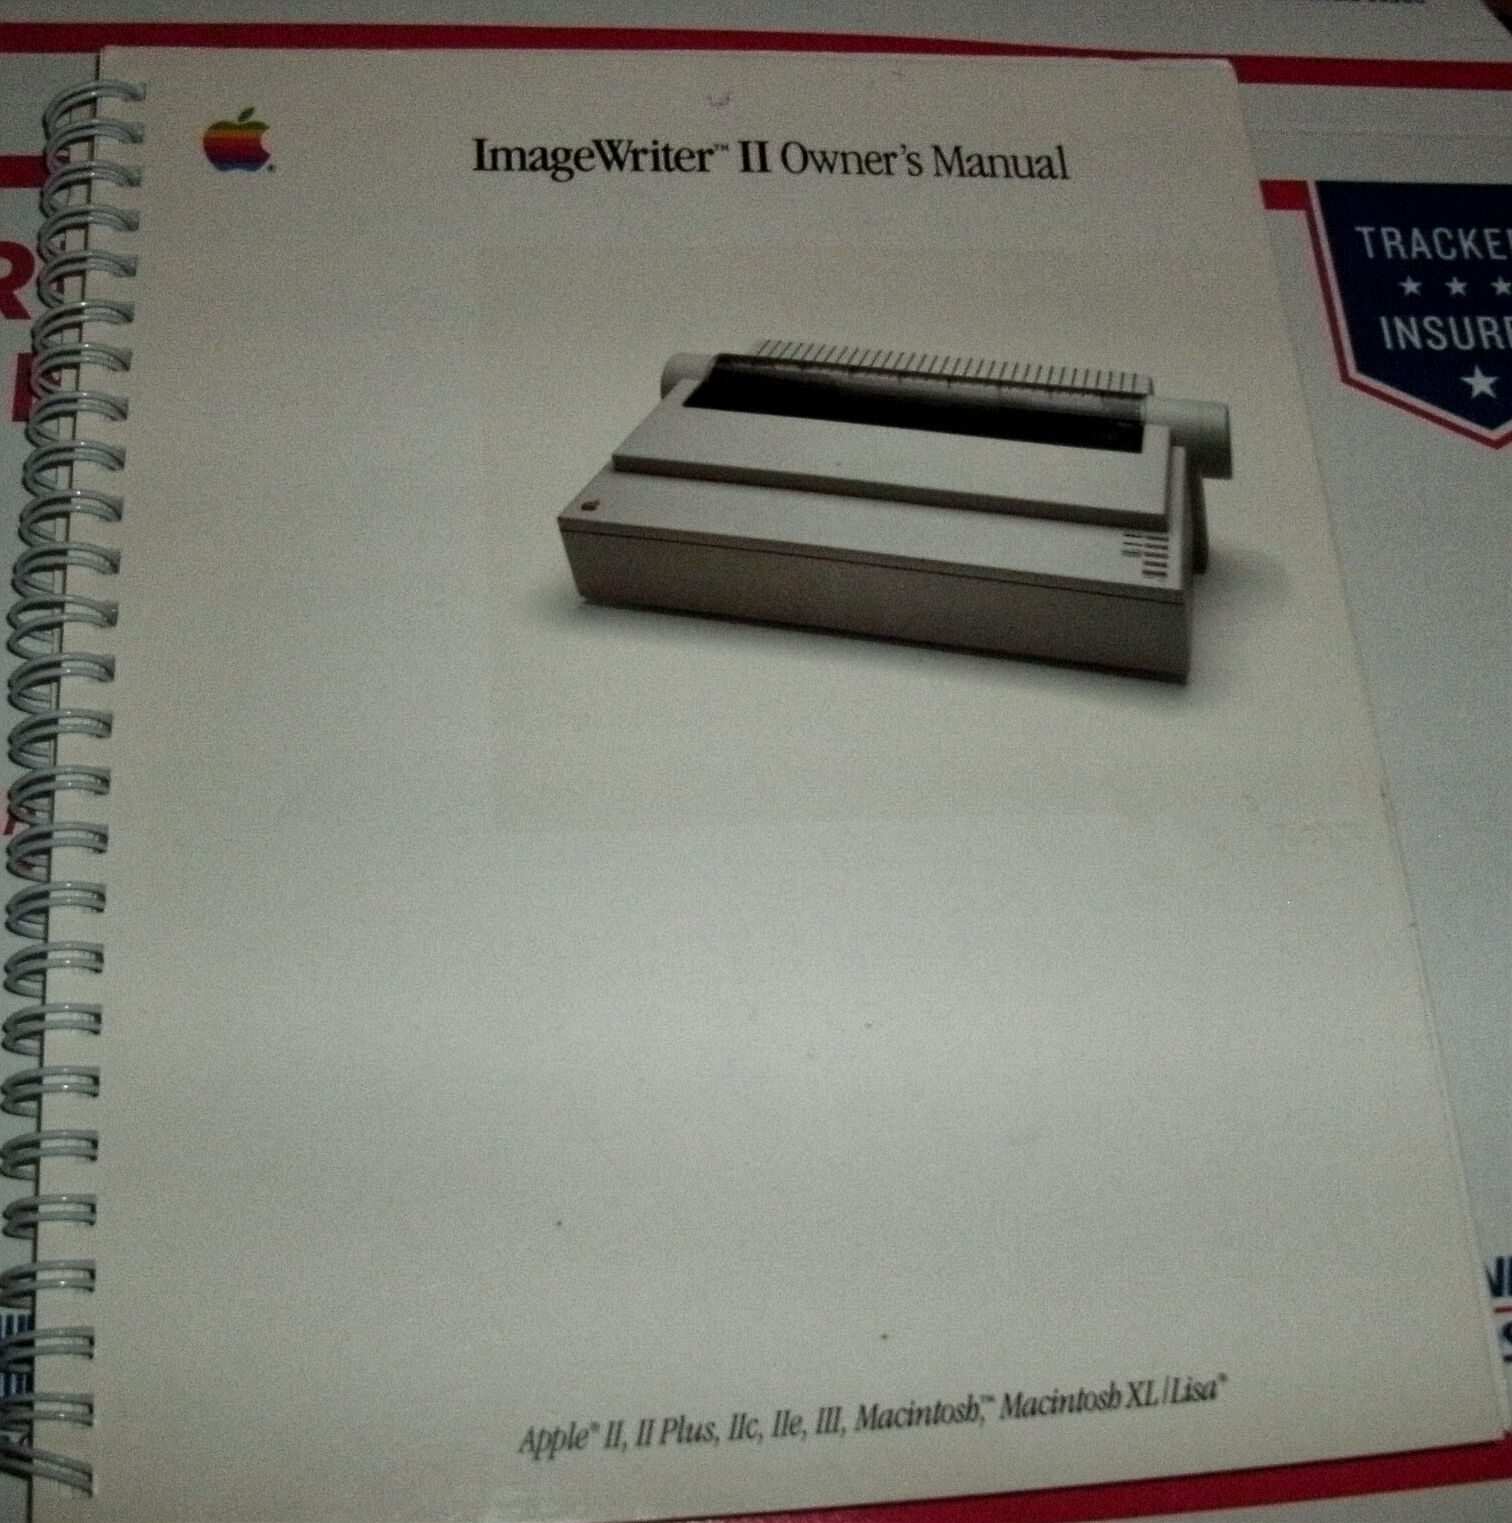 1985 Apple ImageWriter II Printer Manual 1984 Macintosh 128k 512K II II+ IIe IIc